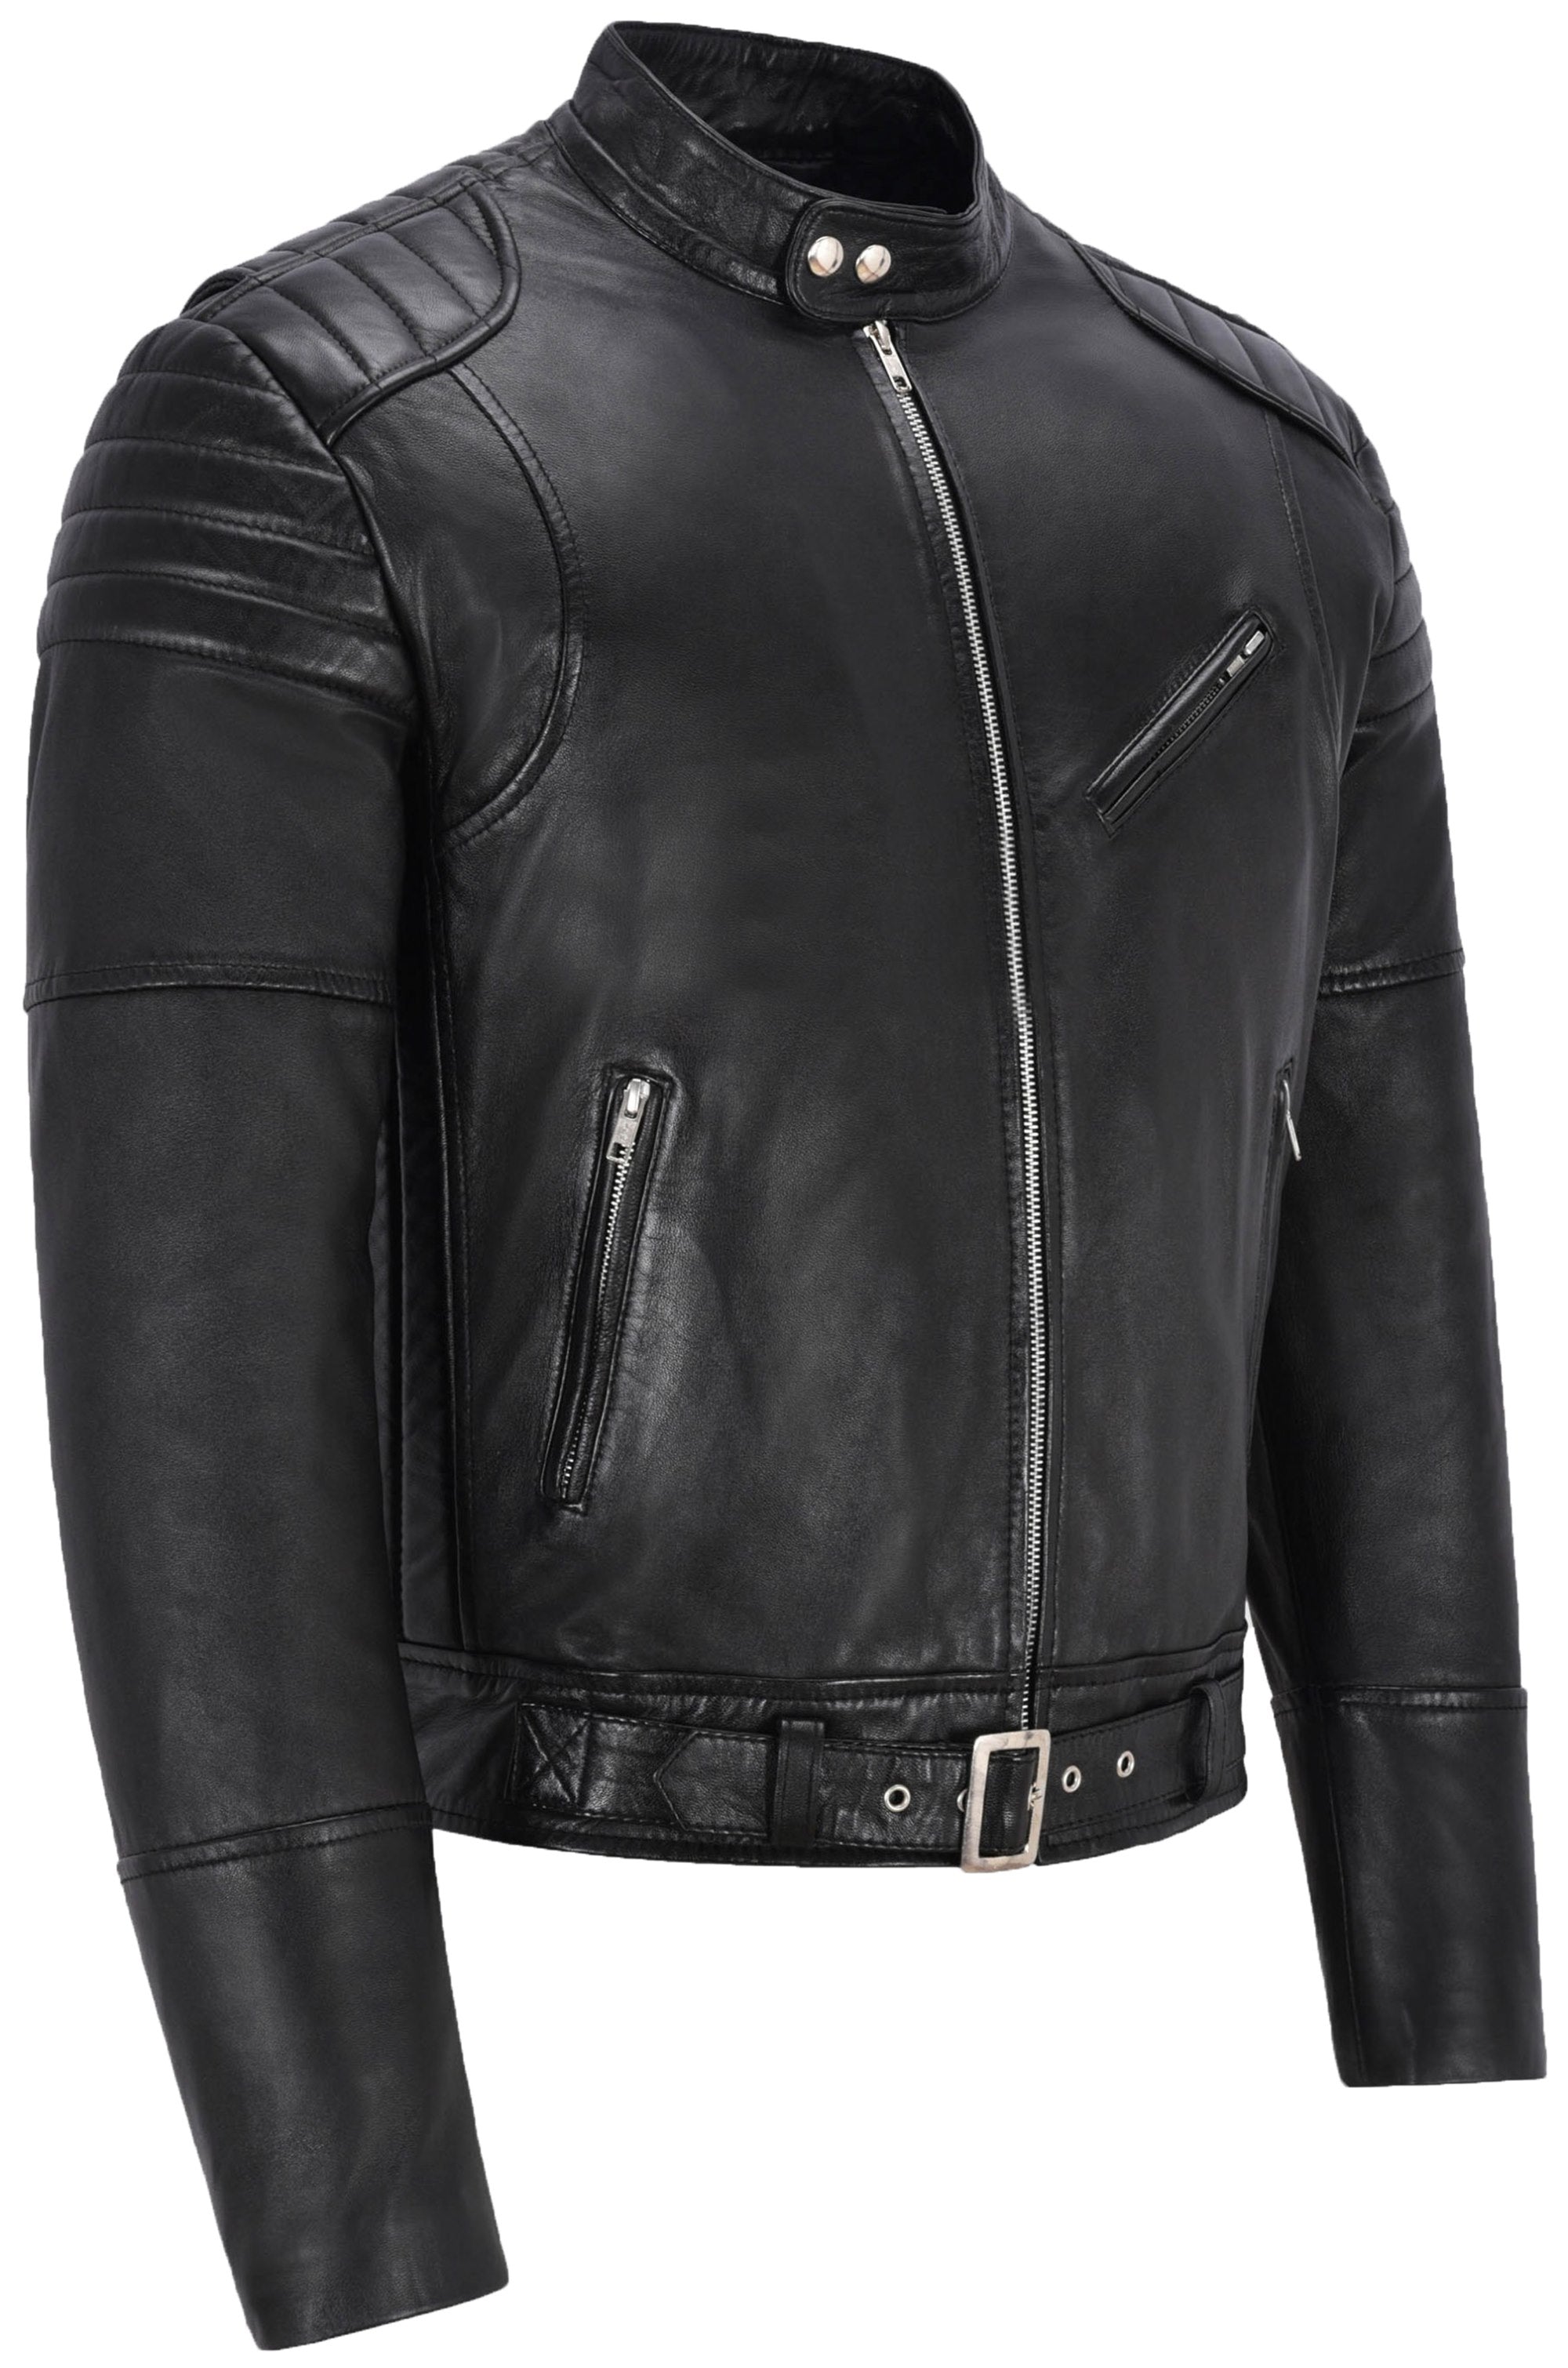 Black Leather Bike Jacket For Men